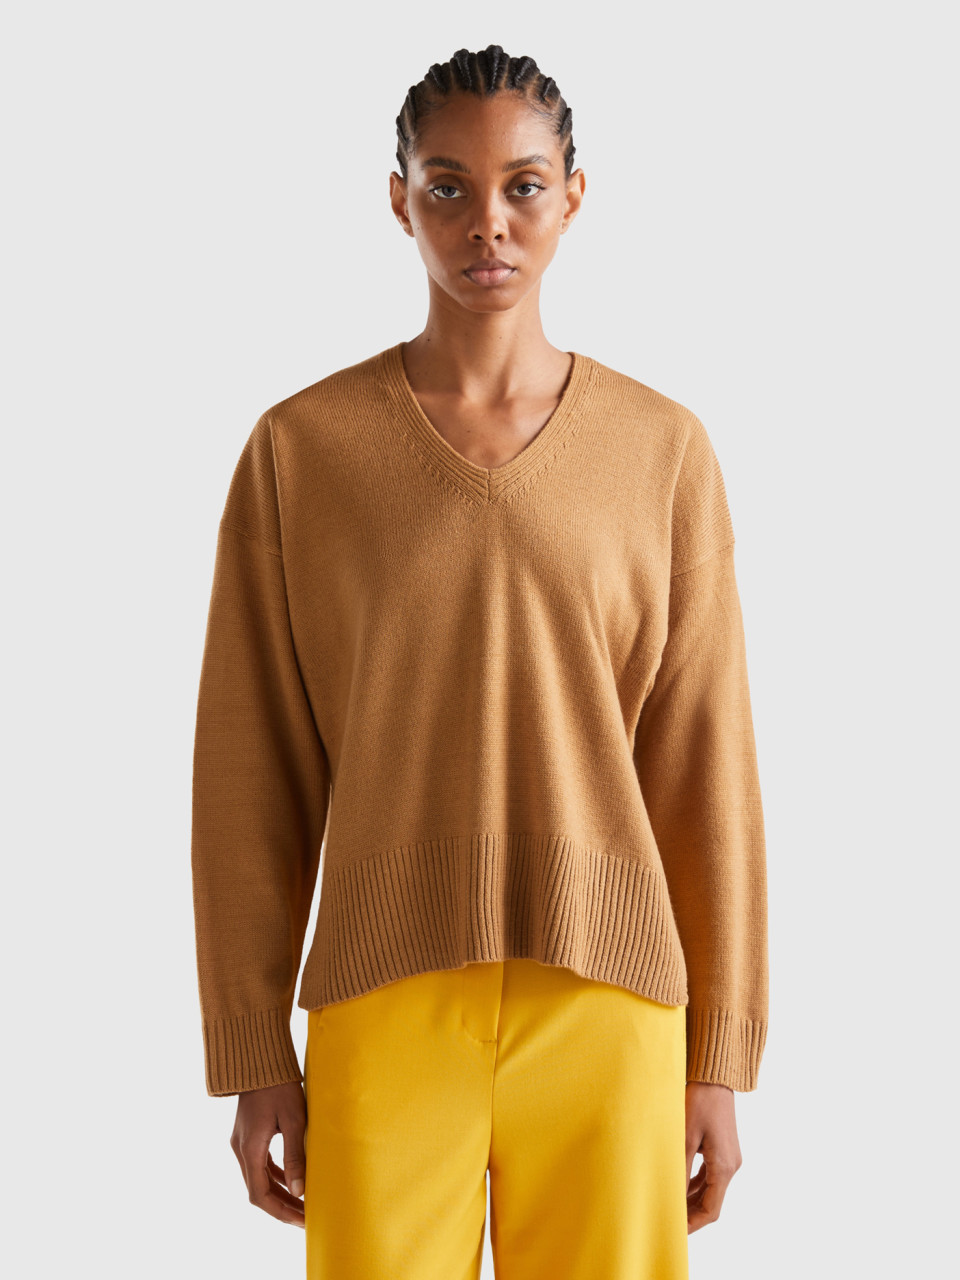 Benetton, Oversized Fit V-neck Sweater, Camel, Women